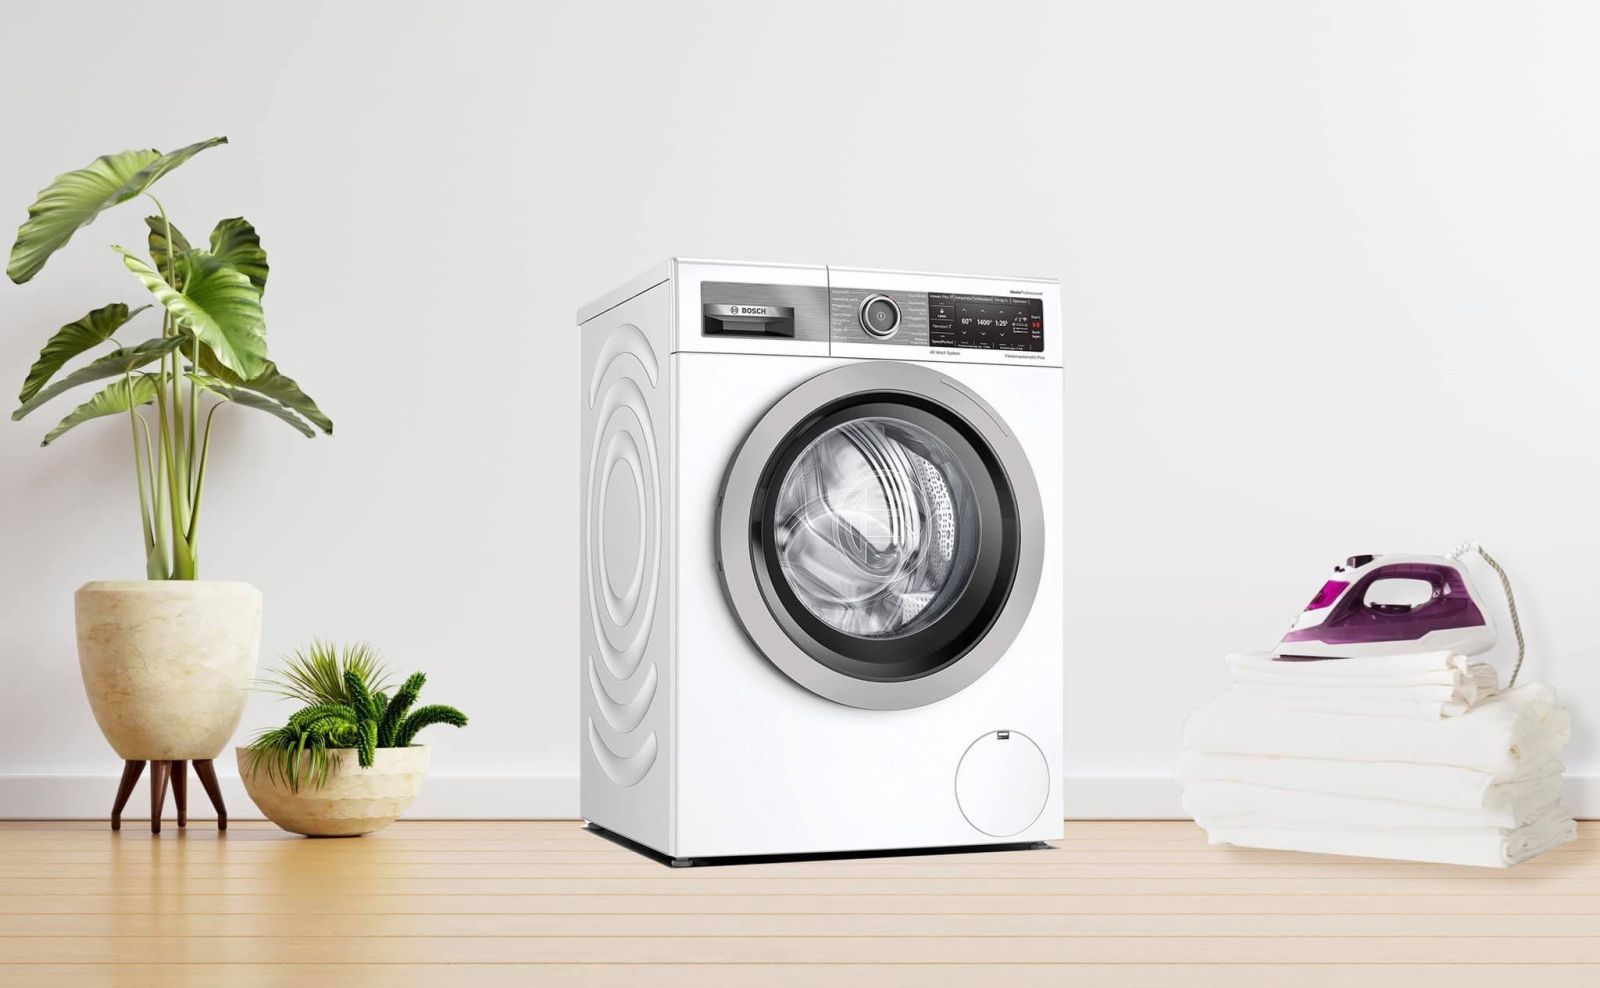 Thiết kế máy giặt Bosch sang trọng và hiện đại